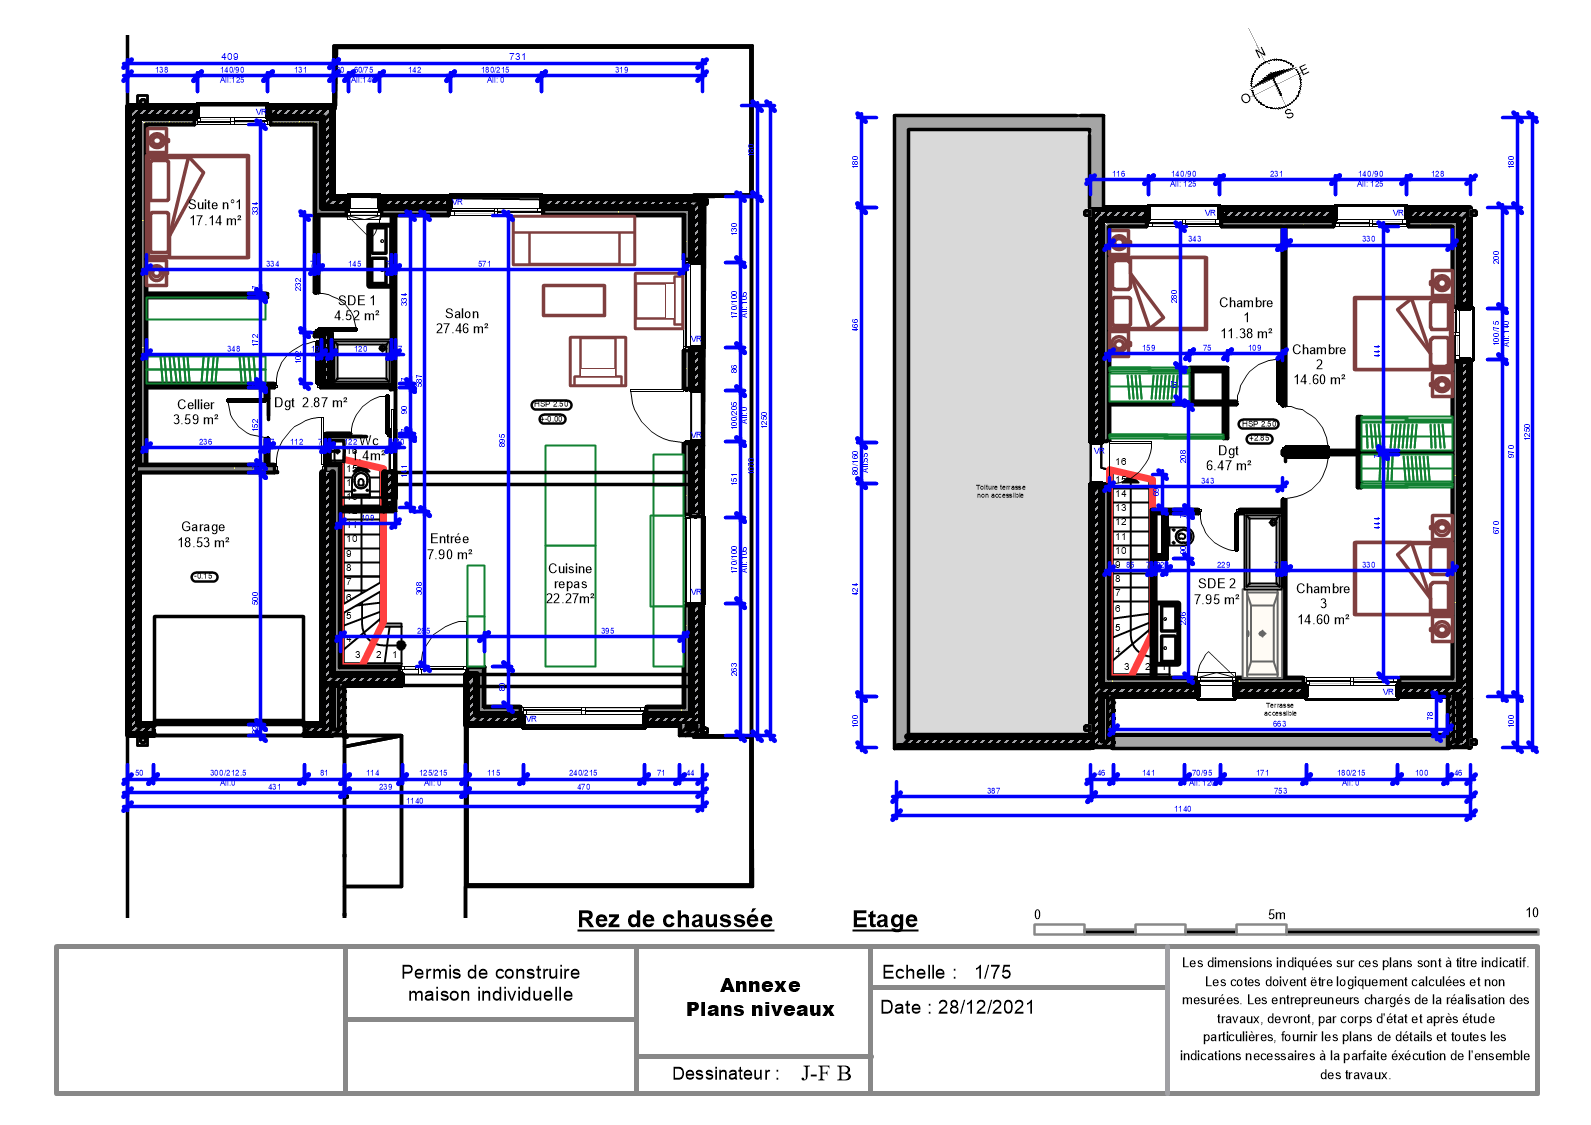 Habitation R+1 - Plan niveaux